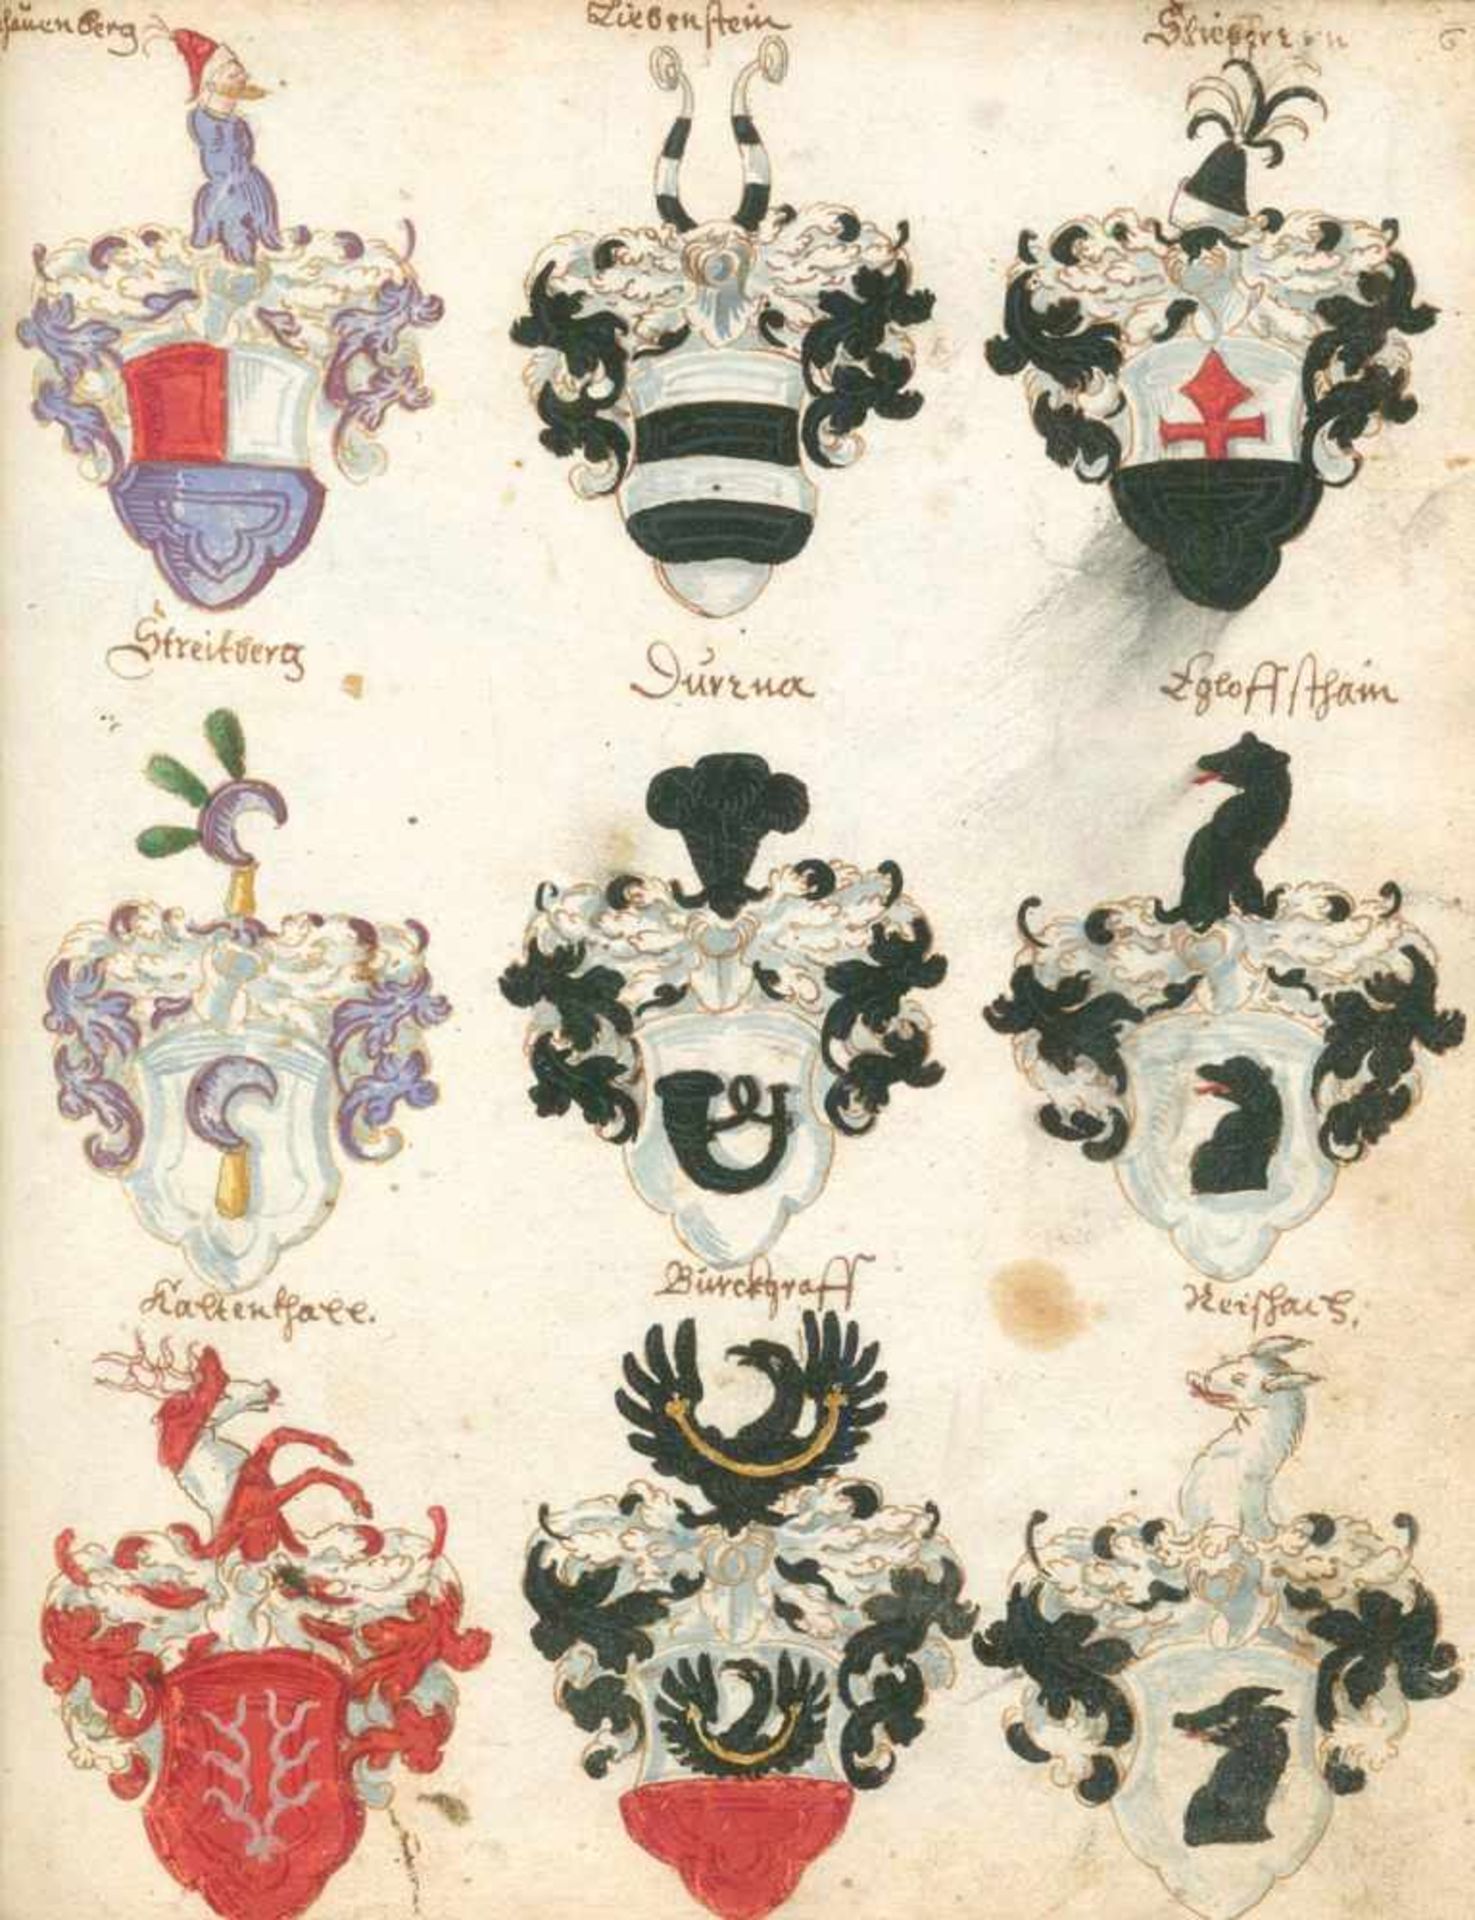 Wappenbuch.Deutsche Handschrift auf Papier, ca. 16./17. Jhdt. Kl.4°. Mit 841 Wappenminiaturen in